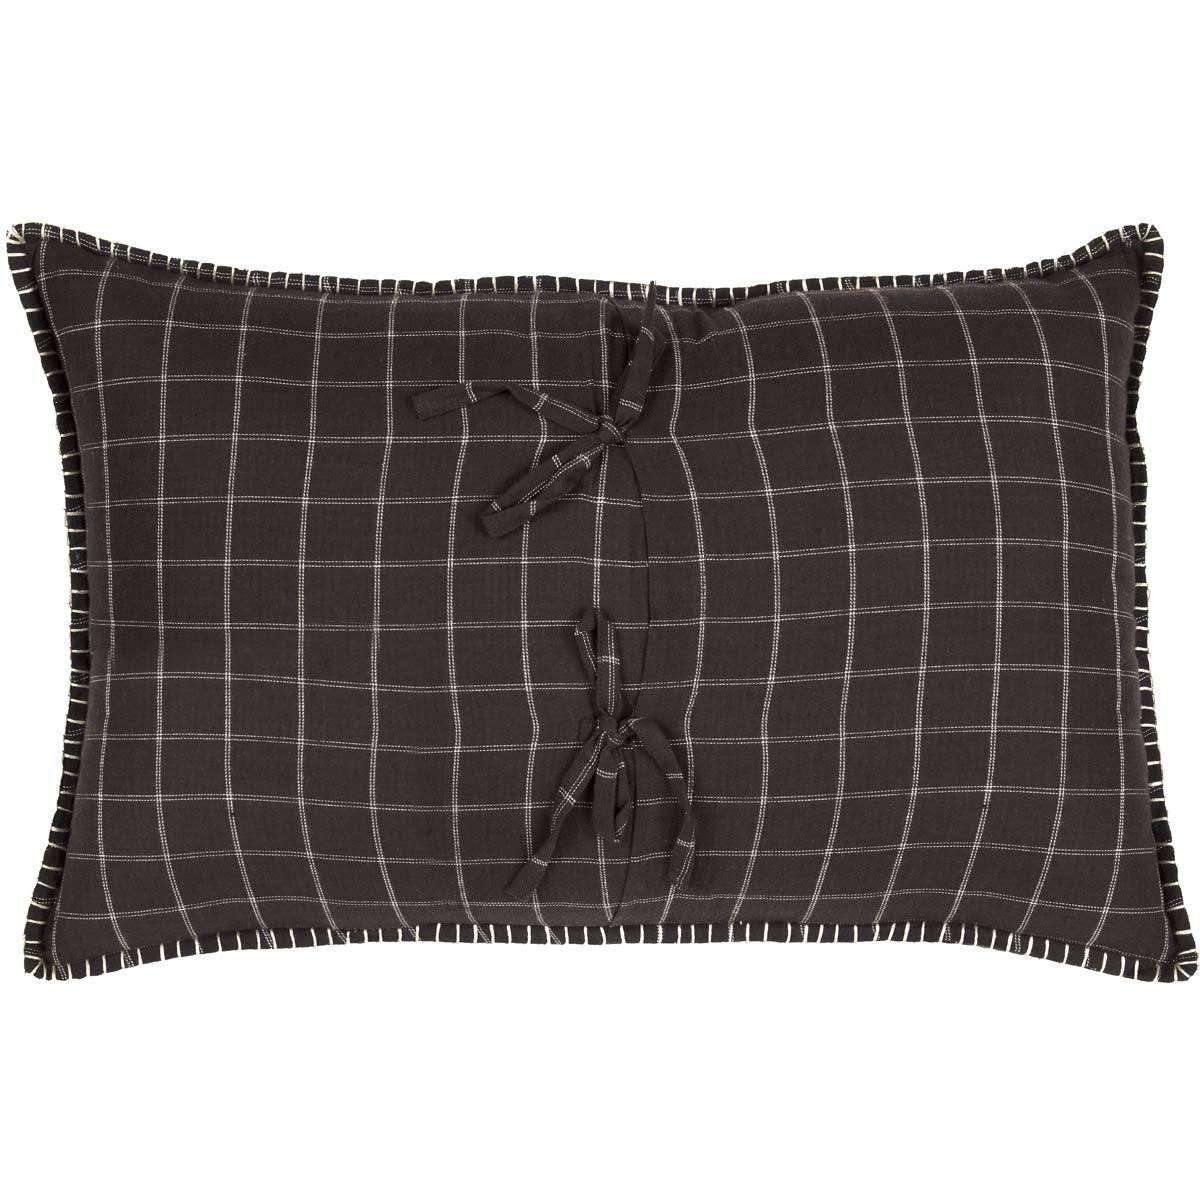 Wyatt Fox Applique Pillow 14x22 VHC Brands back